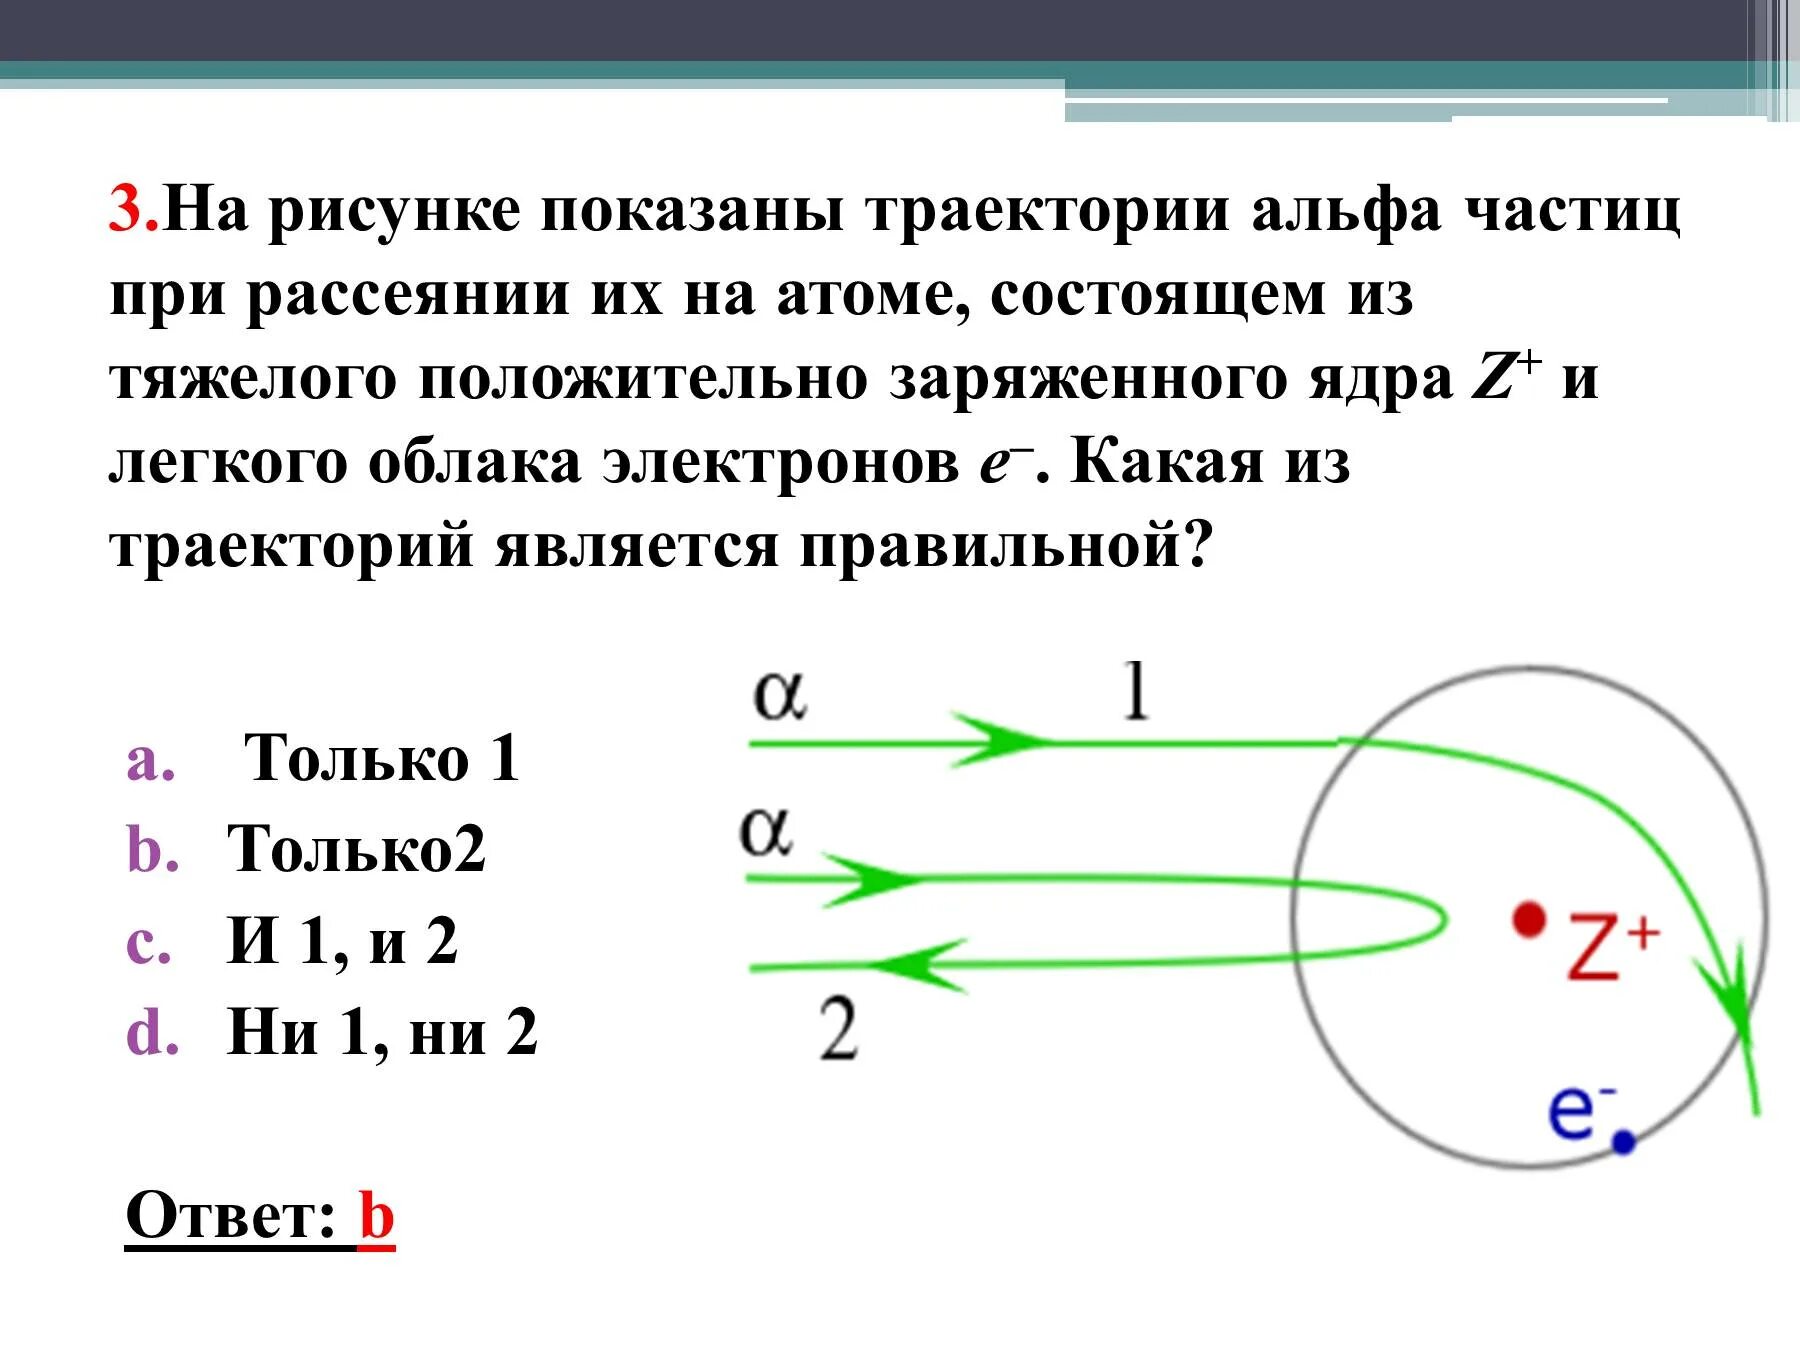 Траектория альфа частицы. На рисунке показаны траектории Альфа частиц при рассеянии их на атоме. На рисунке показаны траектории заряженных частиц. На рисунке показаны траектории а частиц при рассеянии их на атоме.